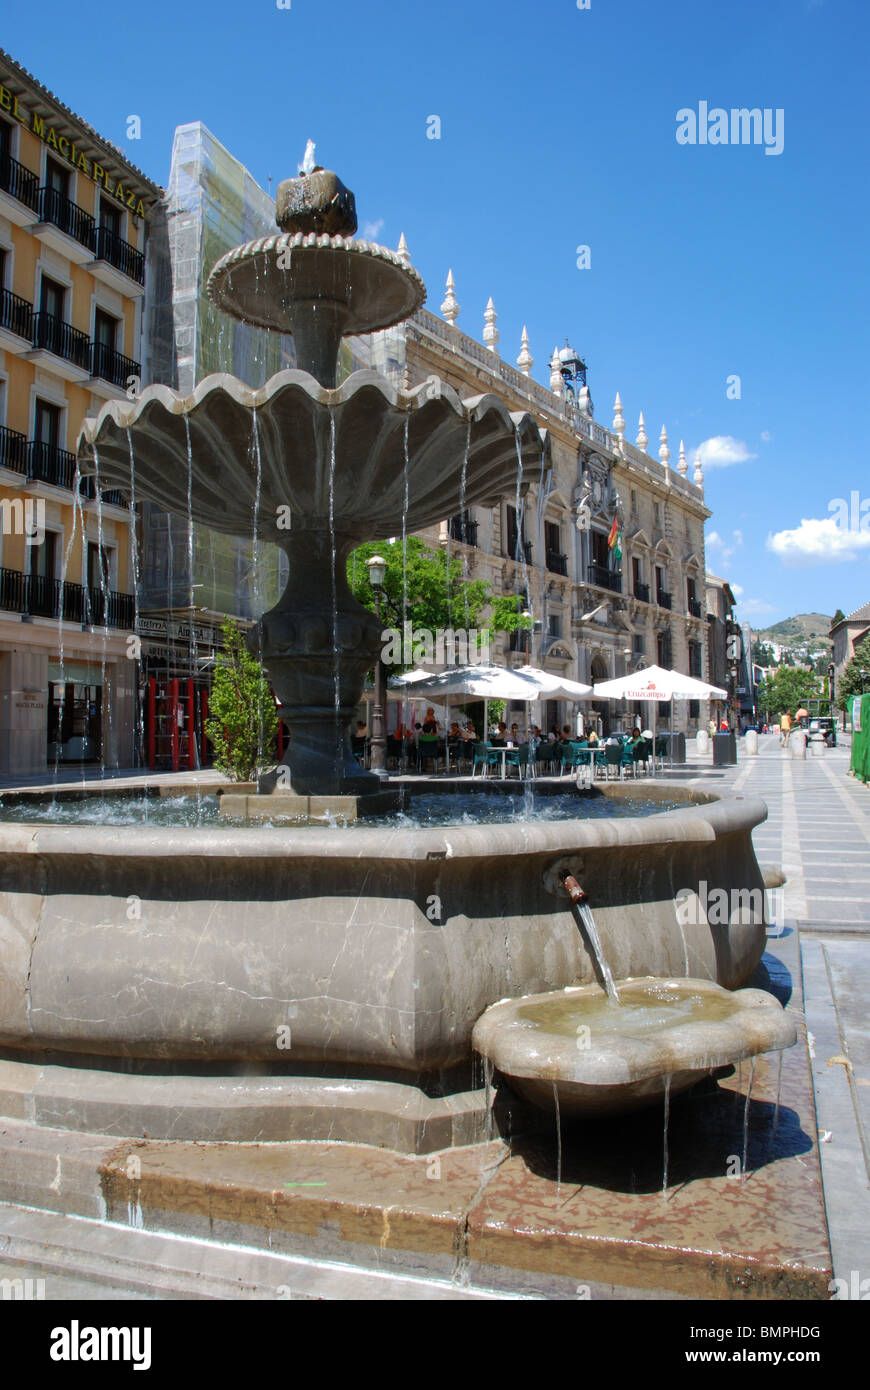 Fountain in the Plaza Nueva, Granada, Granada Province, Andalucia, Spain, Western Europe. Stock Photo